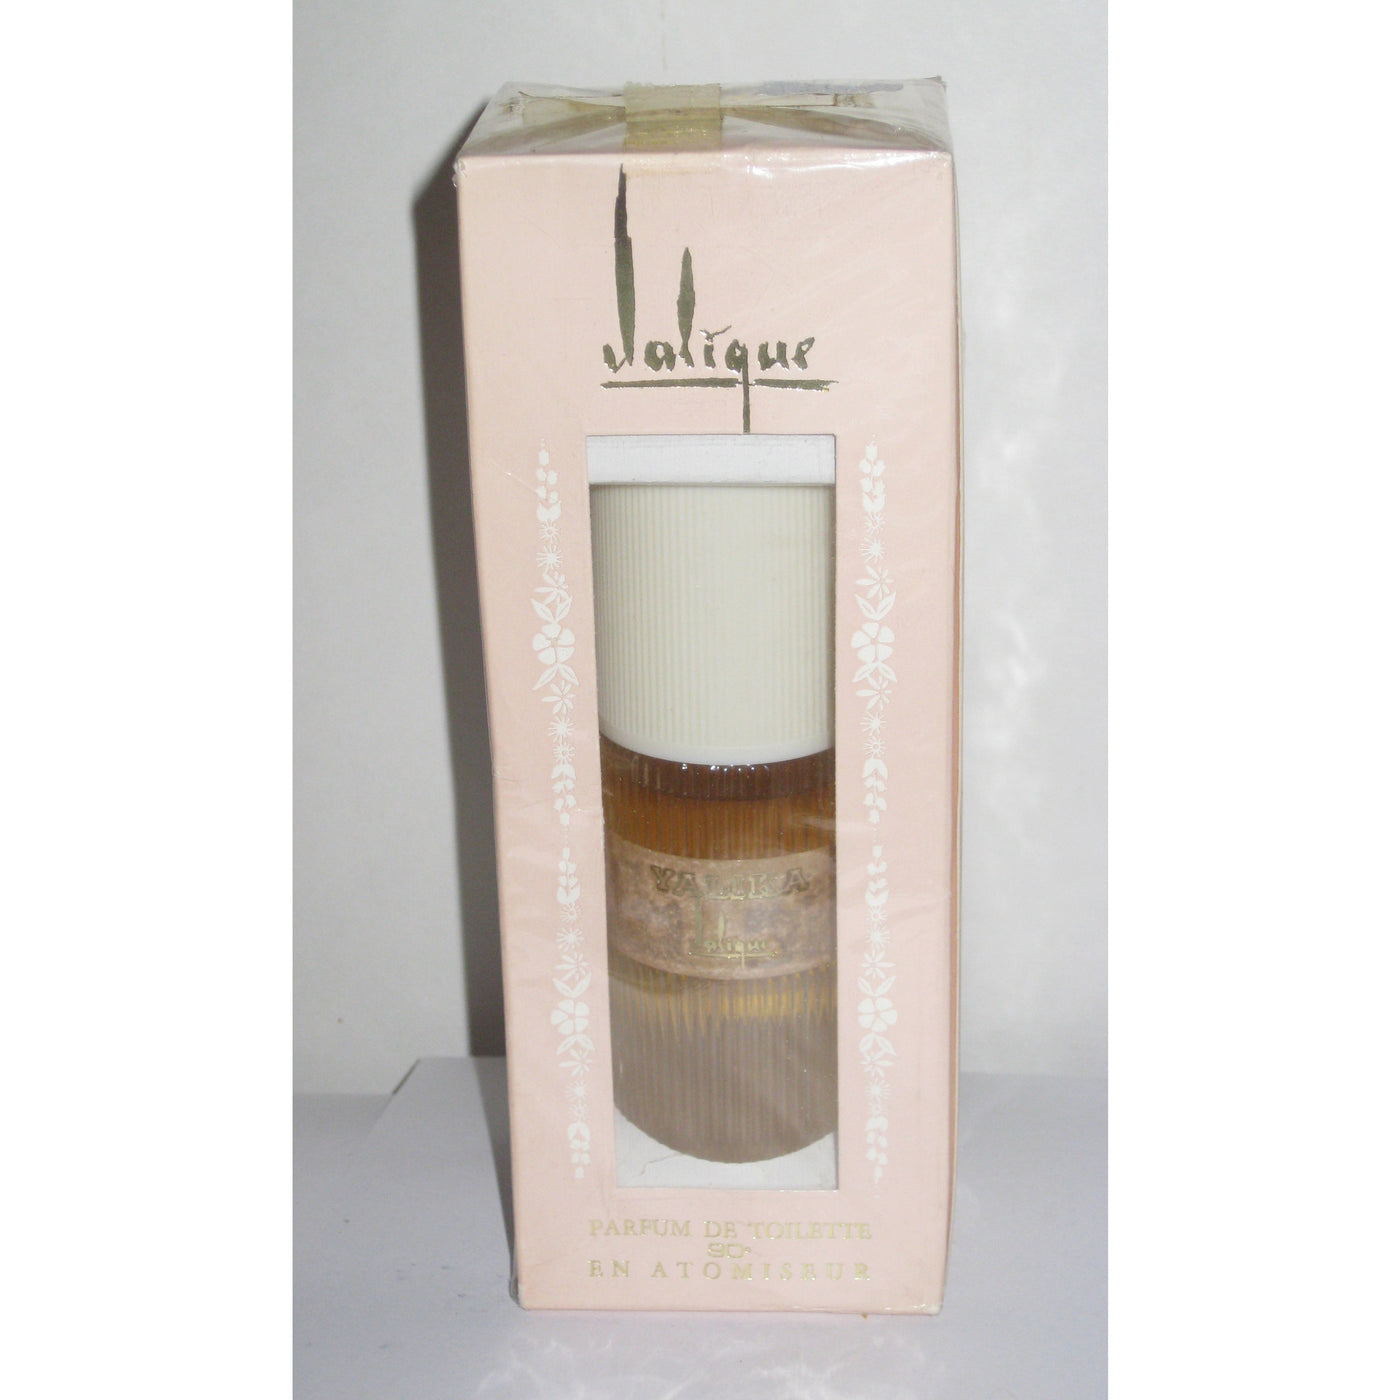 Vintage Yalika Jalique Parfum De Toilette En Atomiseur